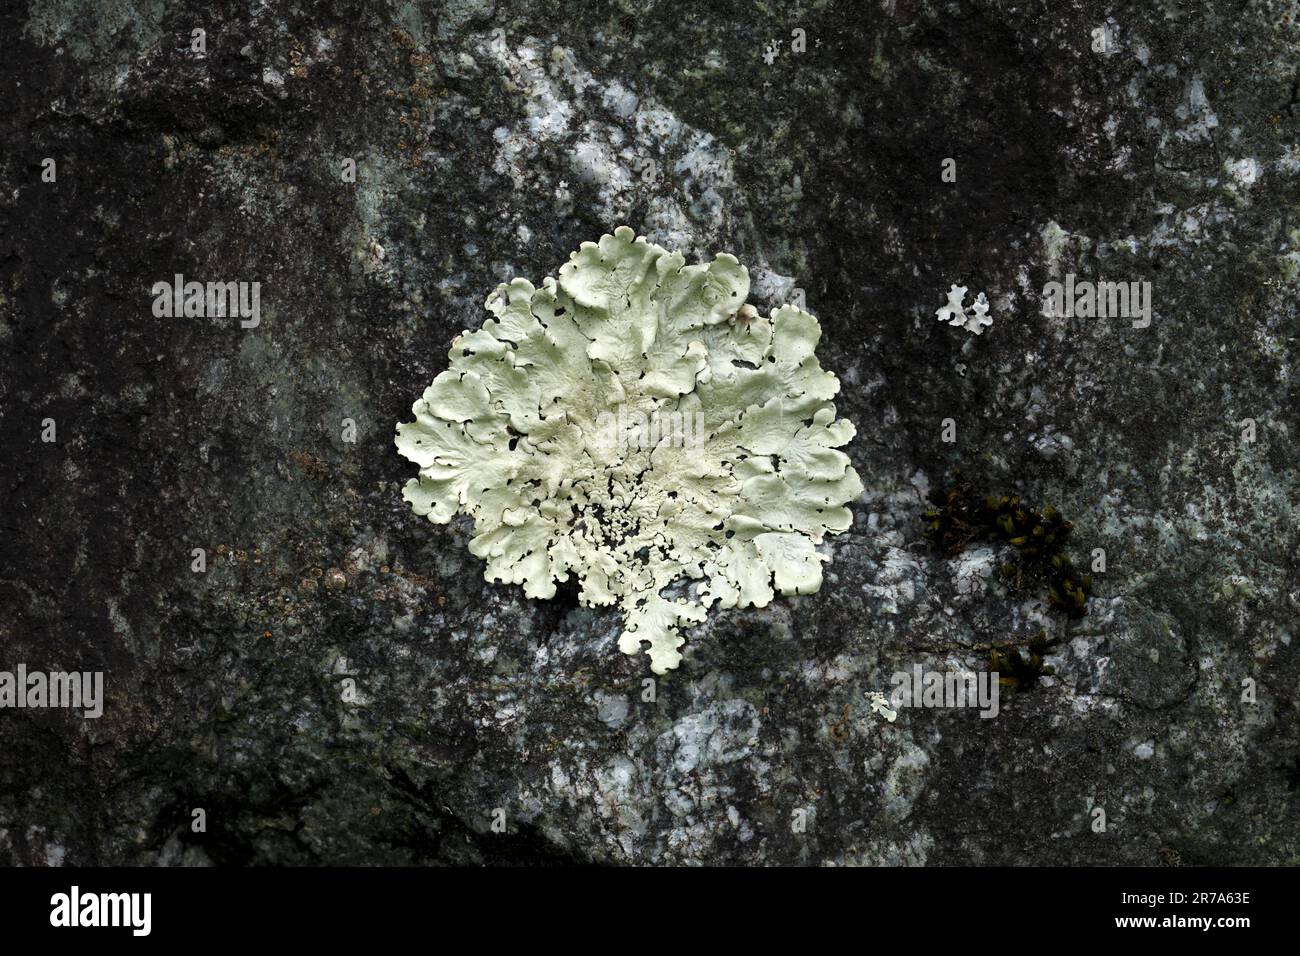 Flavoparmelia caperata. Variety of Lichen in the British Isles. Stock Photo